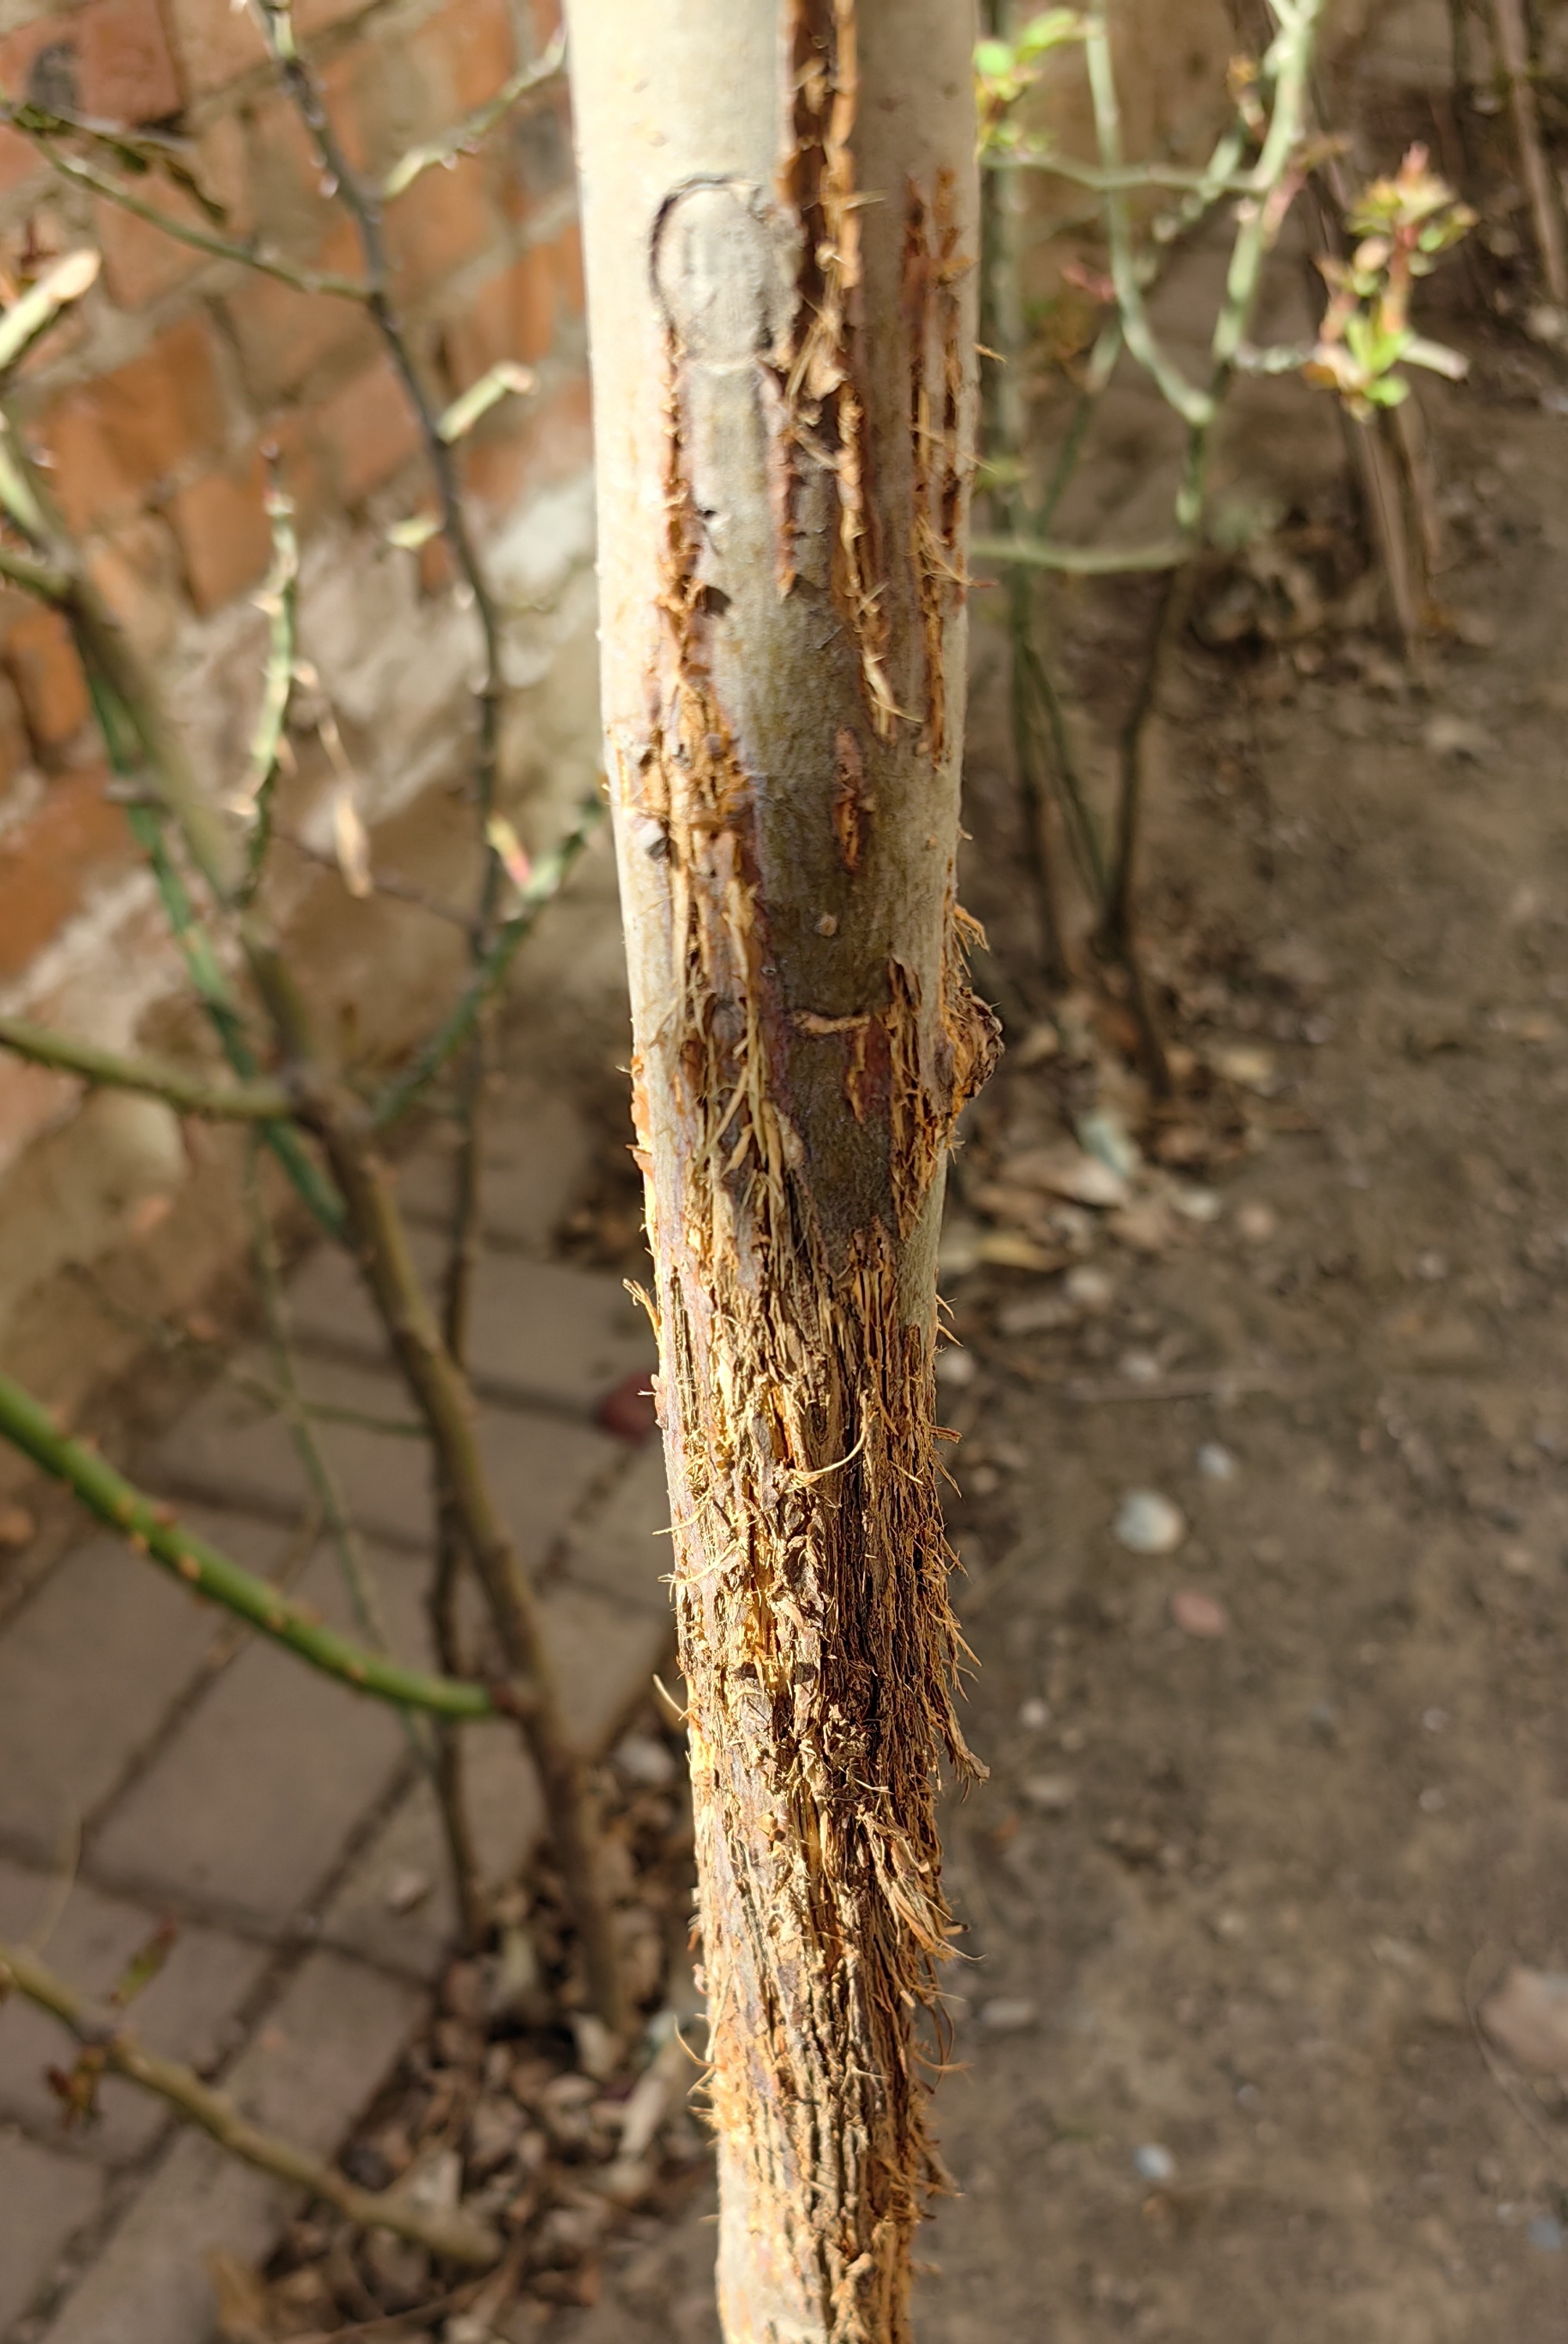 我的西府海棠五年了,开春了,看到树干上的树皮变成这样了,拉毛状,有